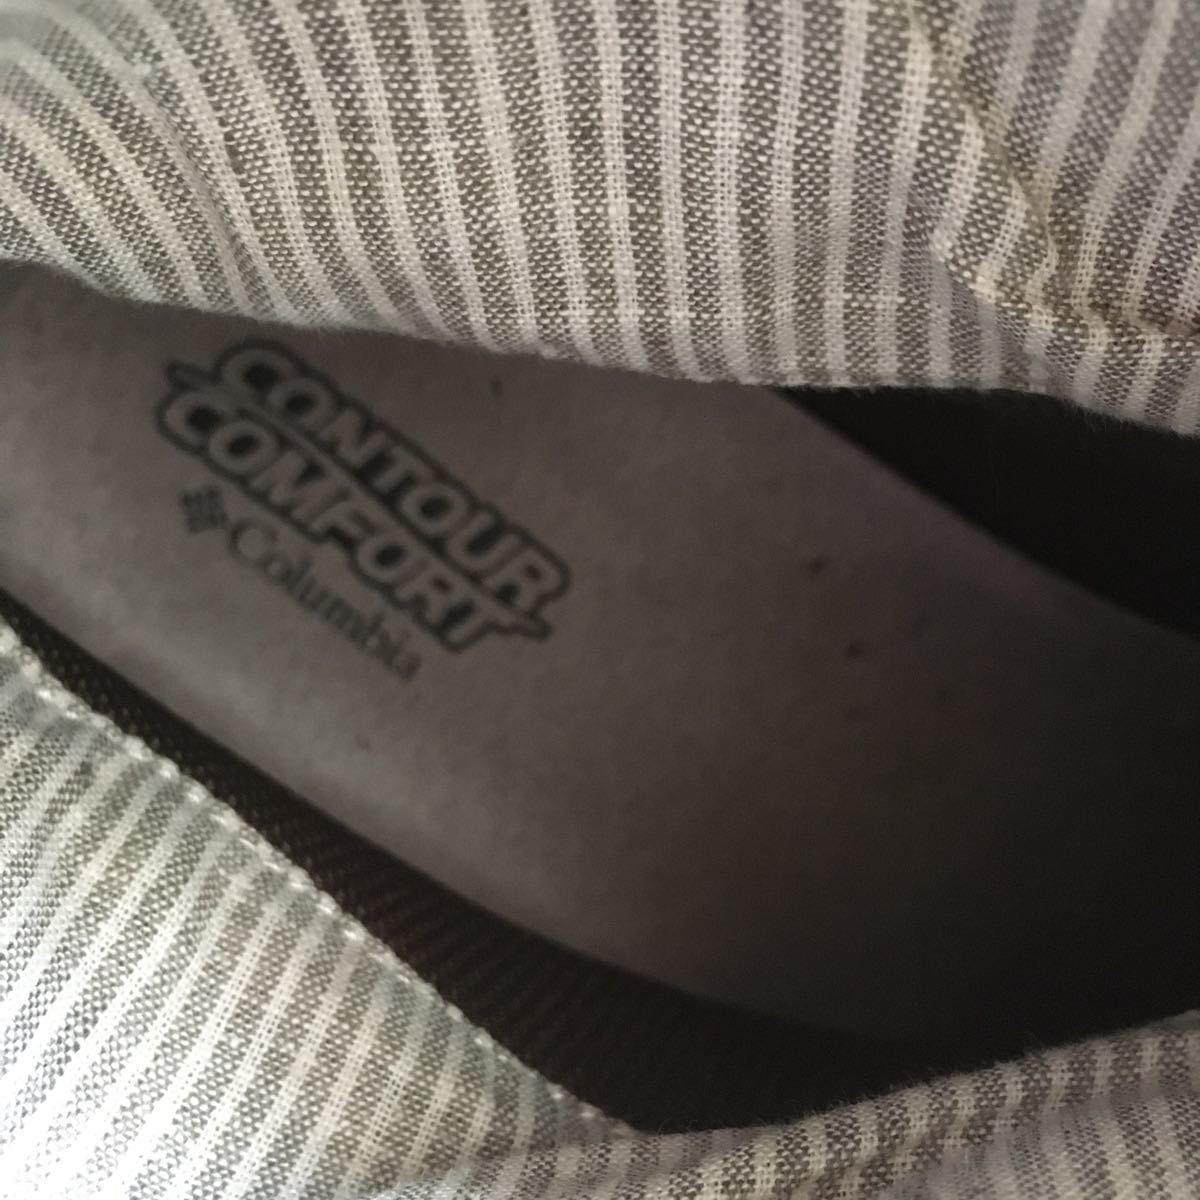 Columbia(コロンビア)ブーツ 25.5cm ピンクベージュ クレープソール程度良